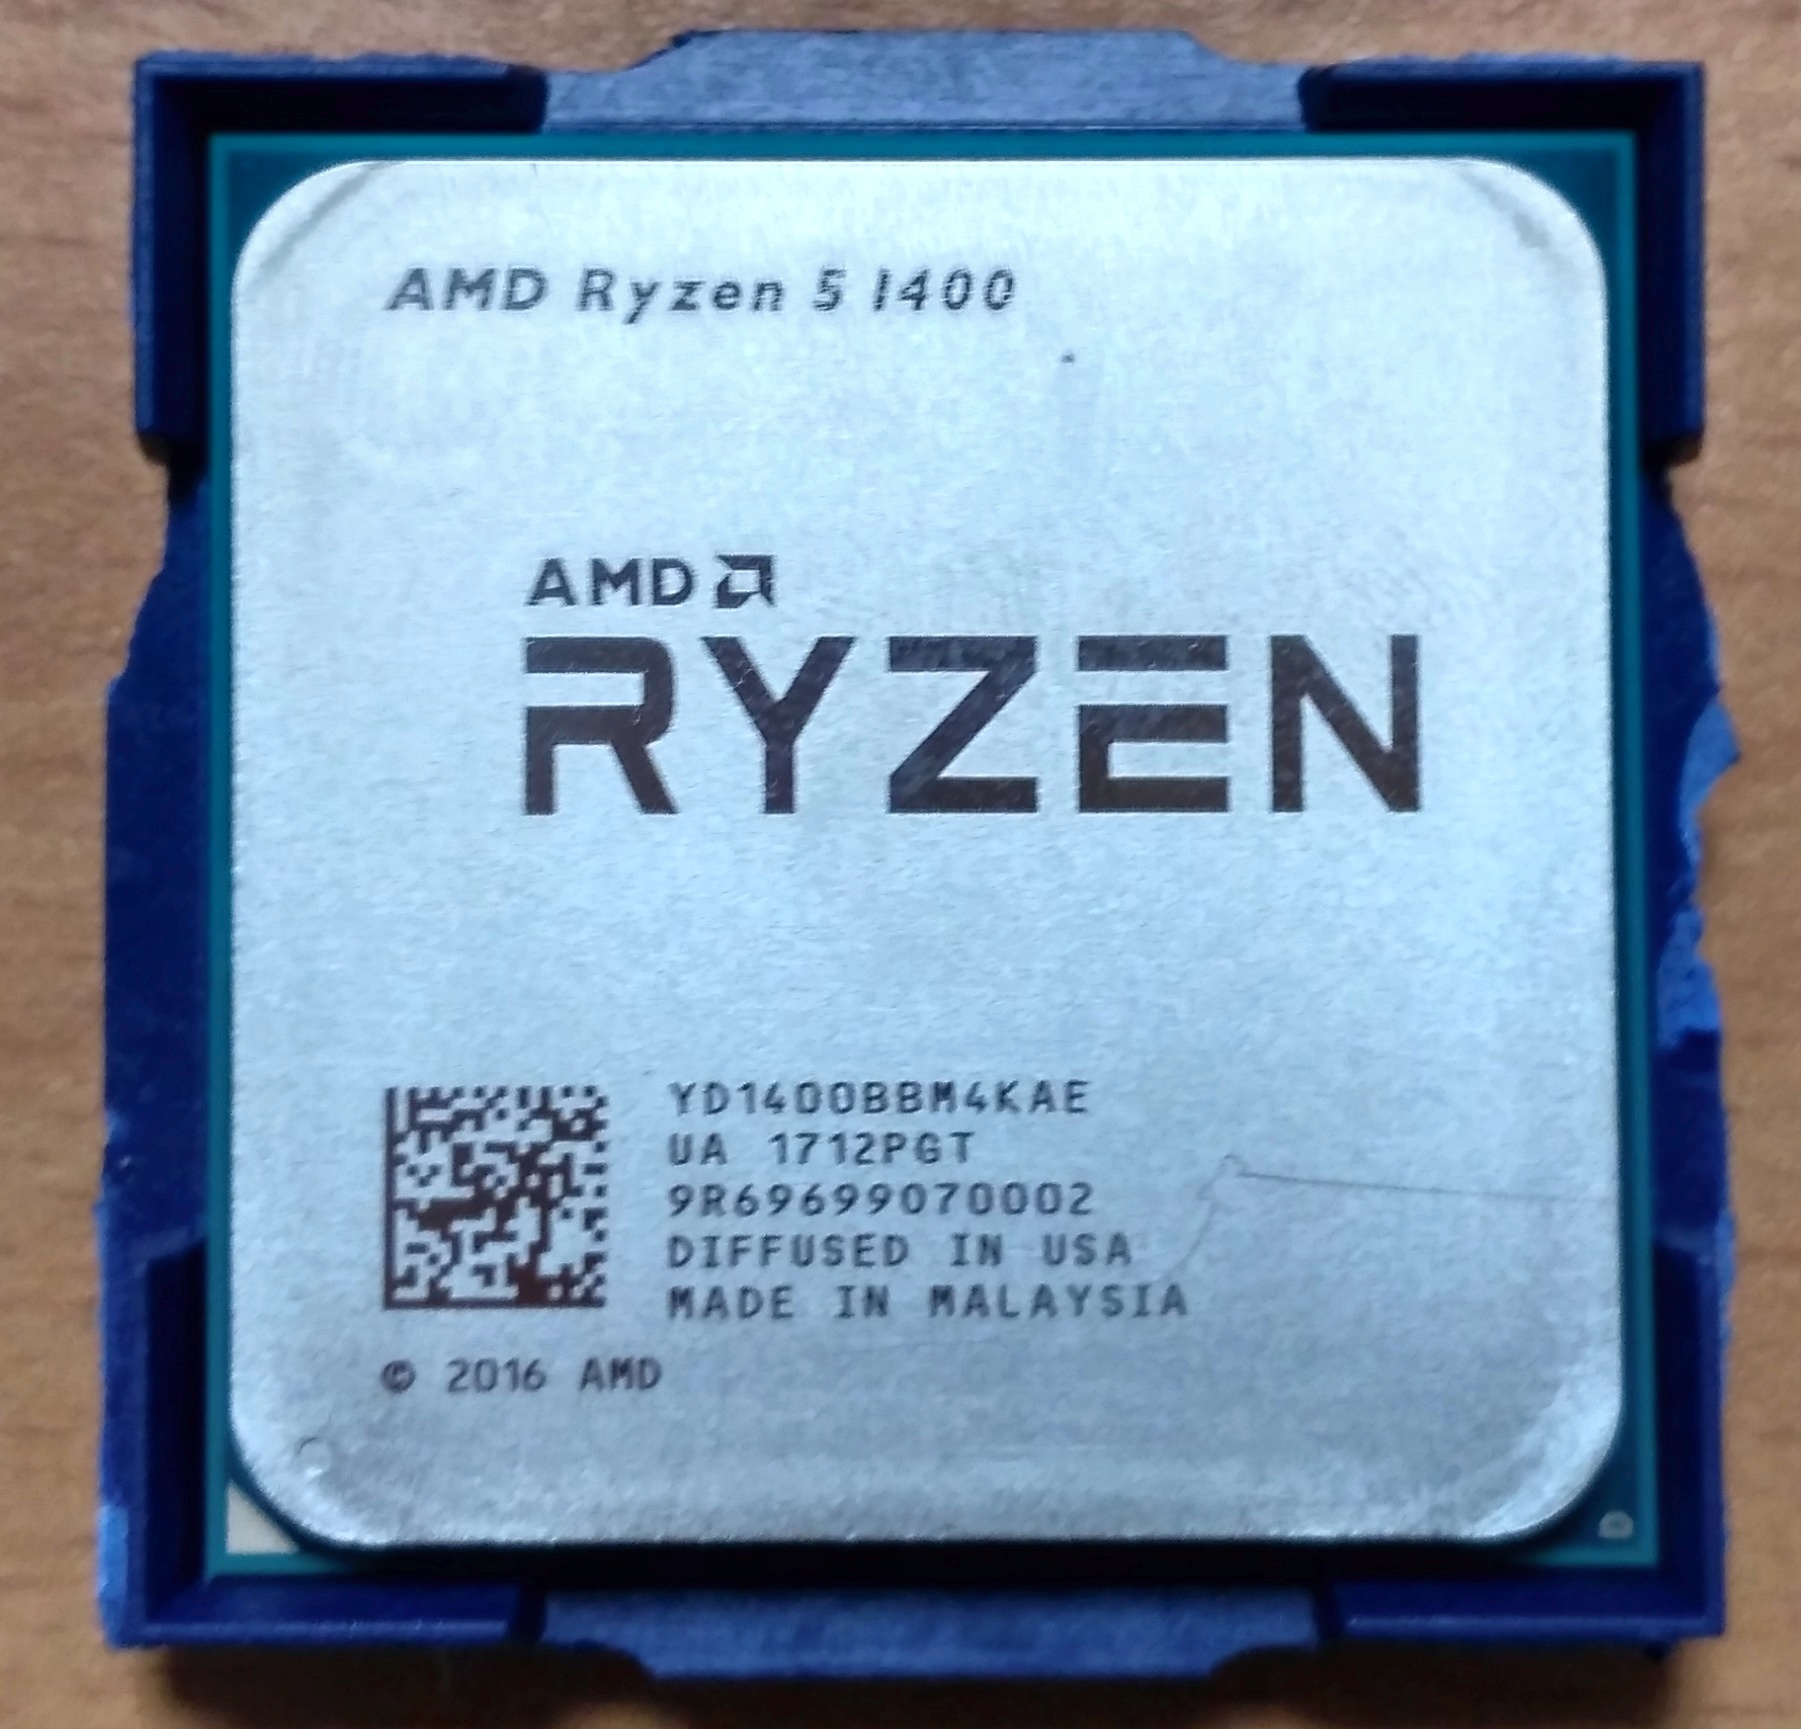 1400 процессор. Процессор AMD Ryzen 1400. Процессор AMD Ryzen 5 1400 am4 OEM, yd1400bbm4kae. AMD Ryzen 5 1400 am4, 4 x 3200 МГЦ. Ryazan 5 1400.